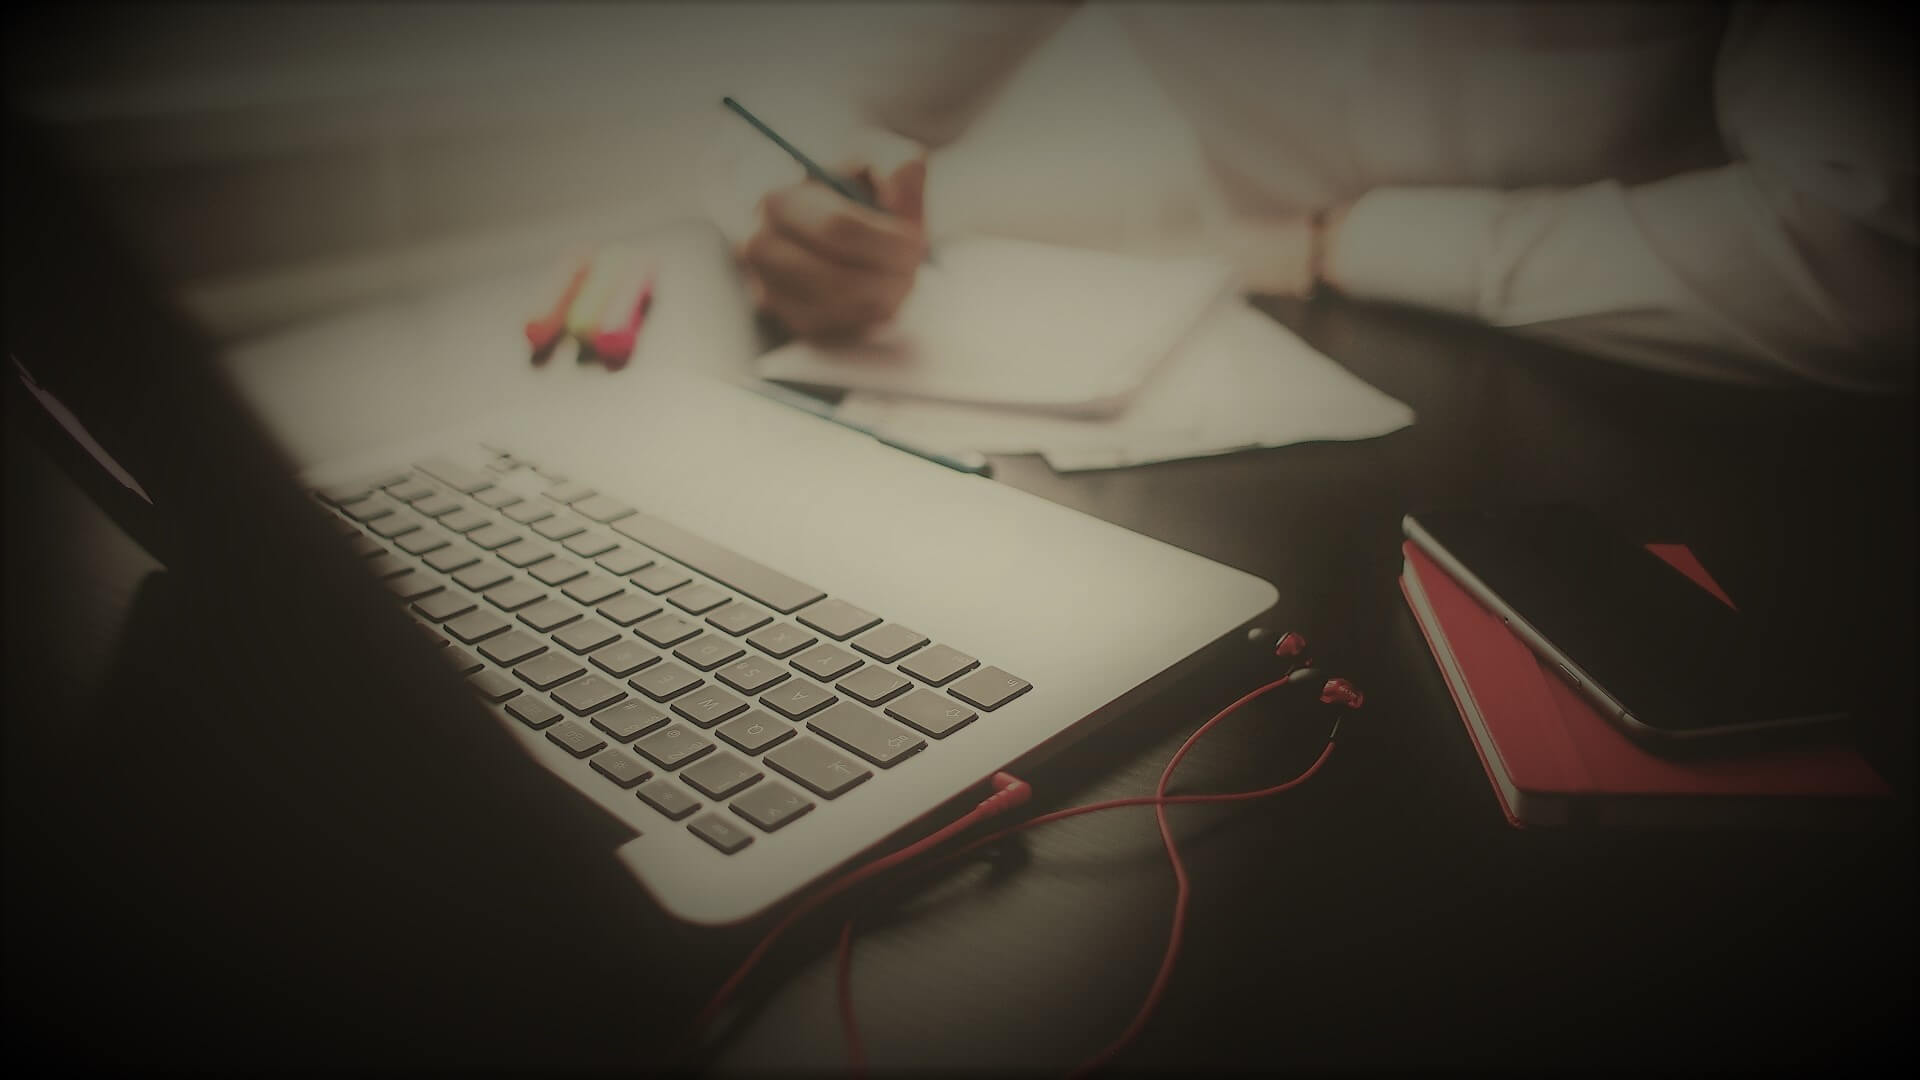 un developpeur devant son ordinateur protable qui tient un stylo dans sa main droite et qui pense a écrire sur son cahier